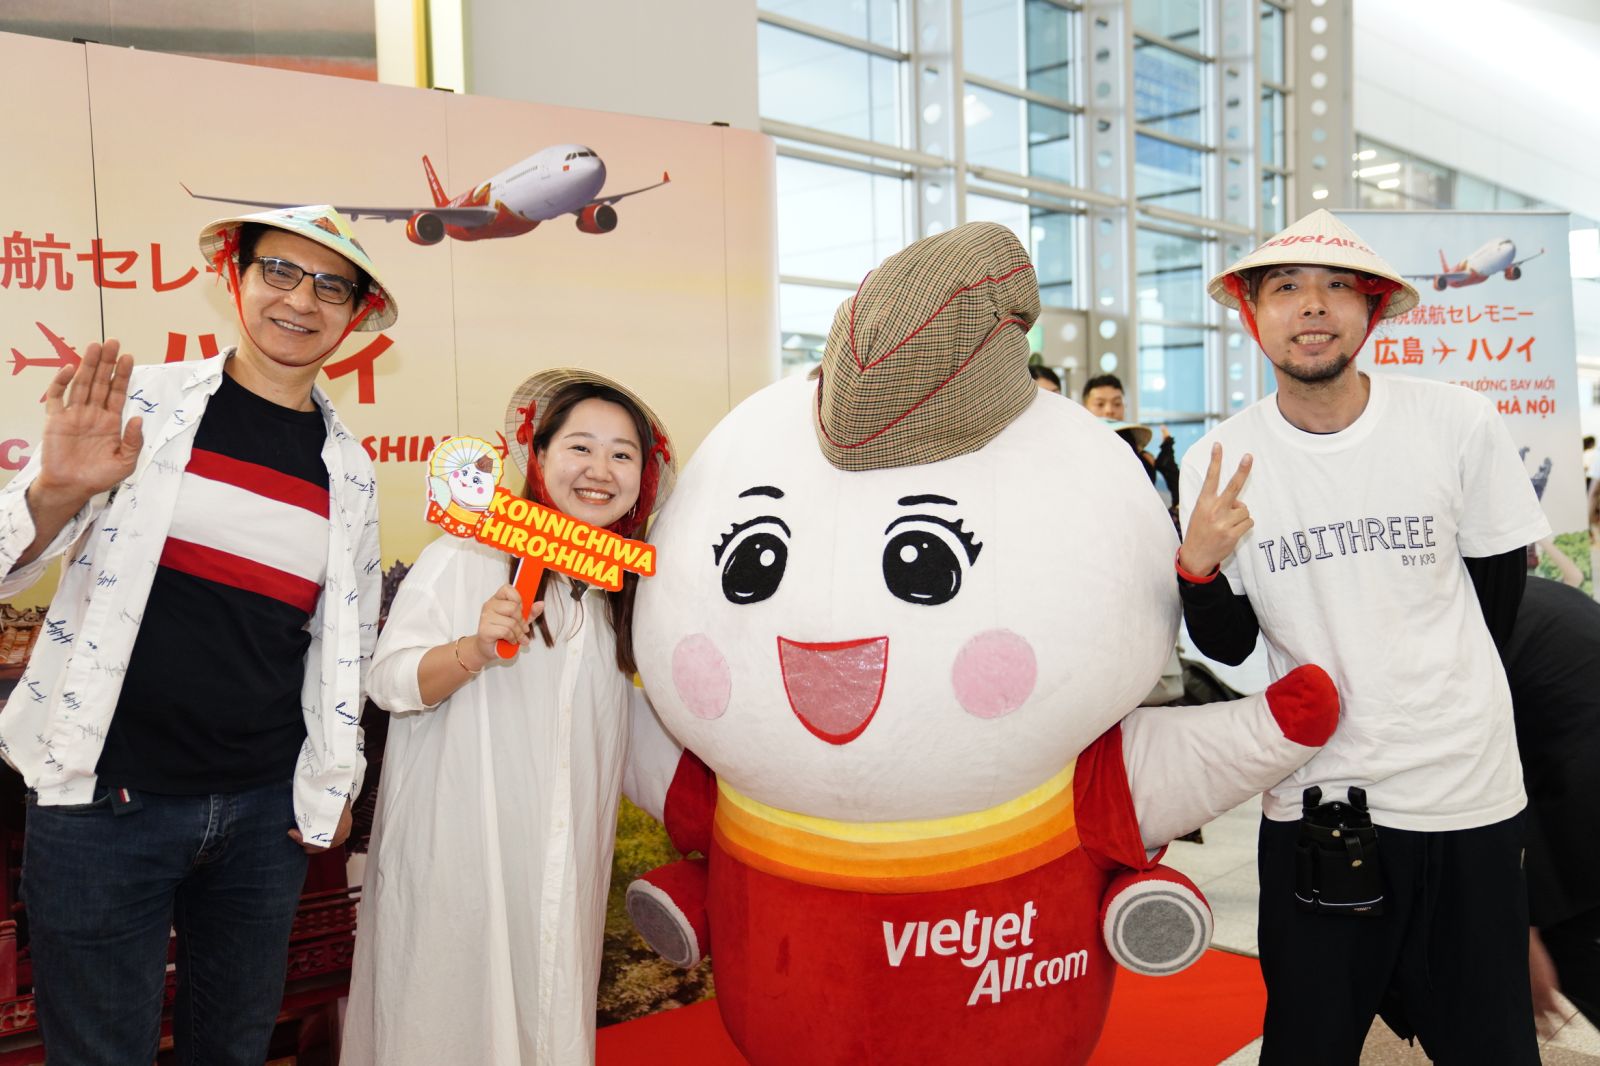 Hè năm nay người dân và du khách có thể thoả thích bay cùng Vietjet 24/7 với nhiều chương trình khuyến mãi giá vé rẻ, vé 0 đồng